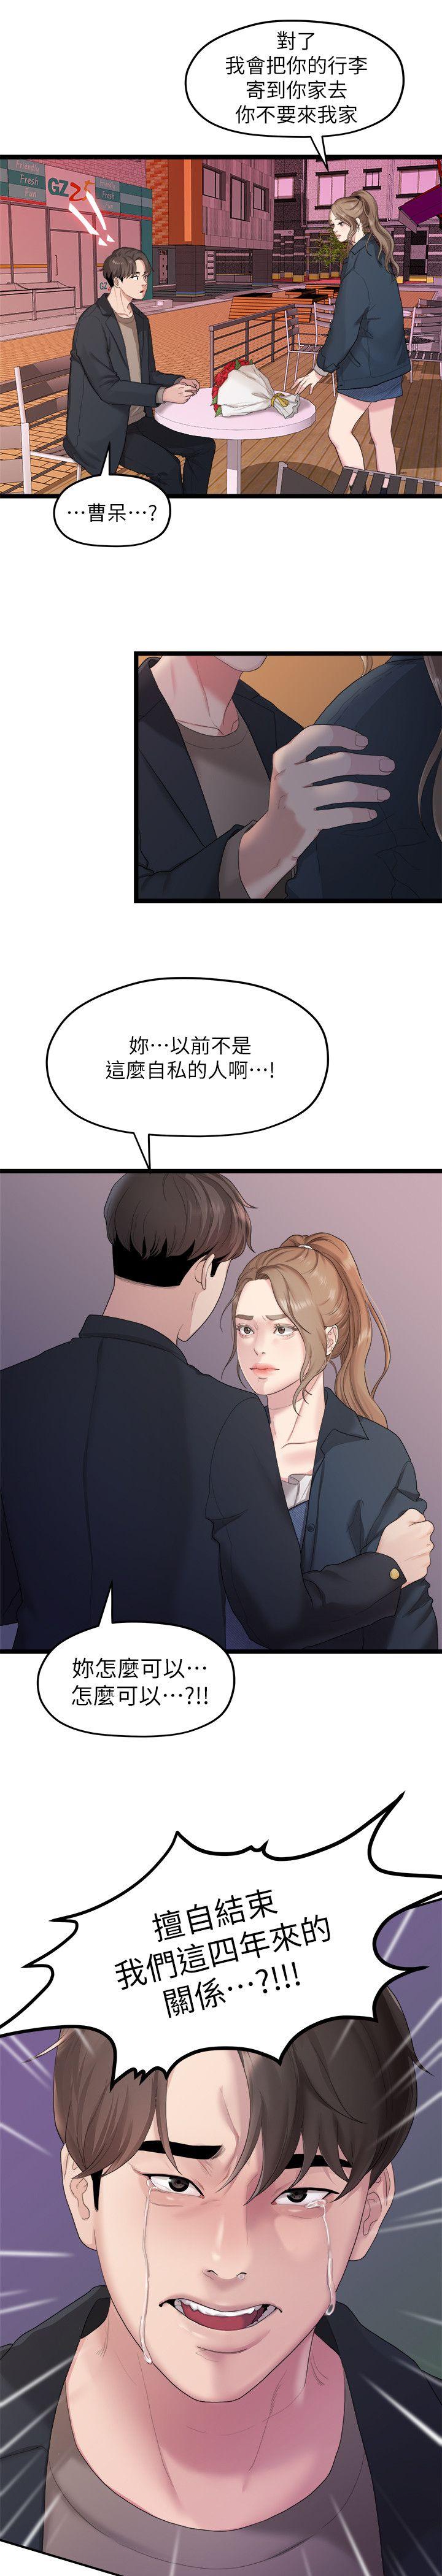 韩国污漫画 我們的非常關系 第19话-是因为那小子吧? 19